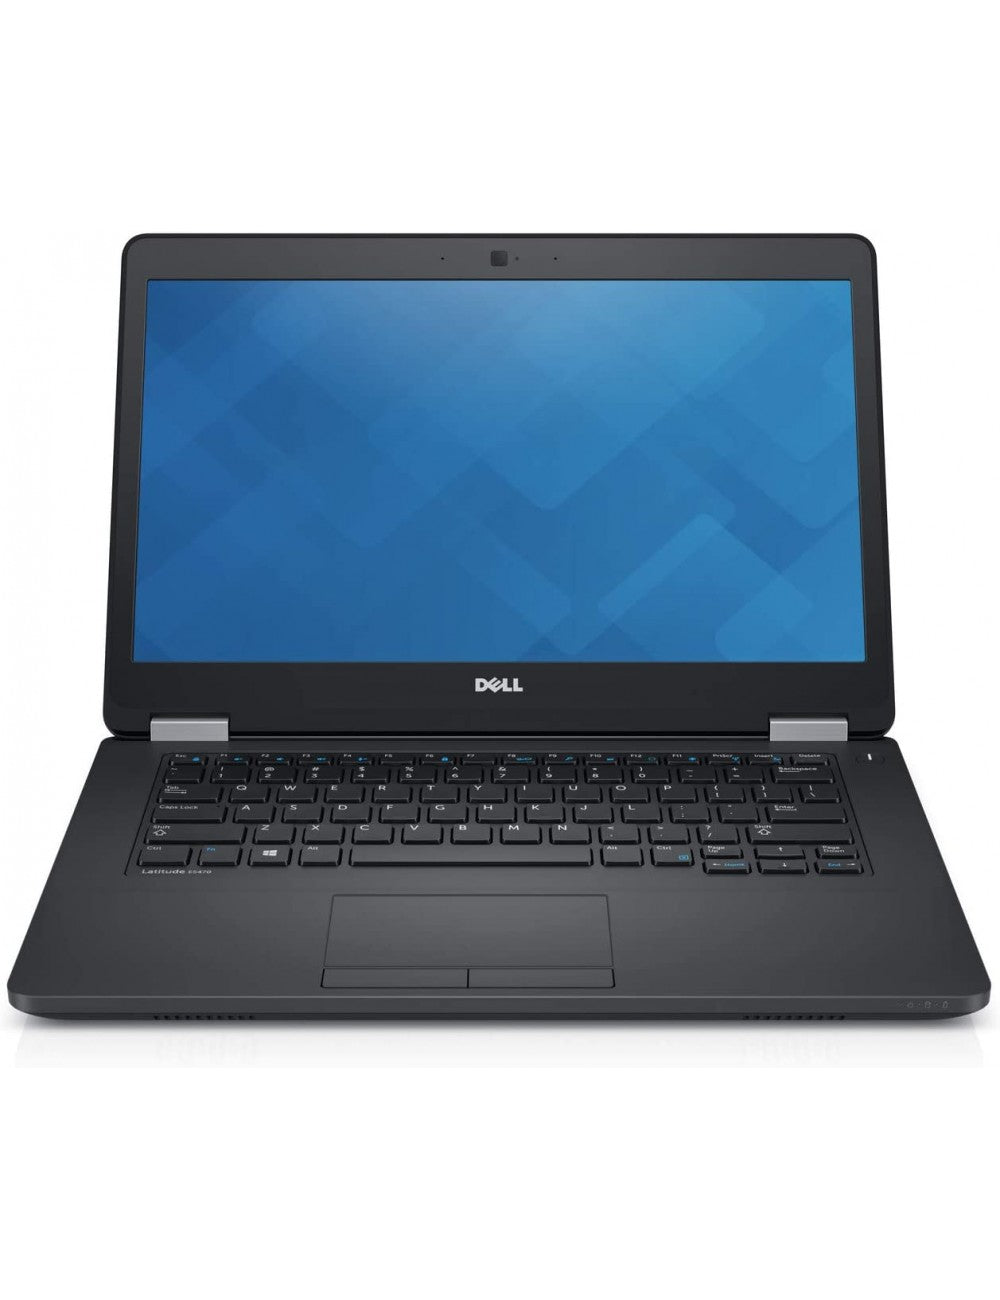 Notebook ricondizionato Dell Latitude E5470 - Processore: i5 - 6300U - Ram: 8 GB - Archiviazione: 240 SSD - 14" - Windows 10 - Grado A - Garanzia 1 anno